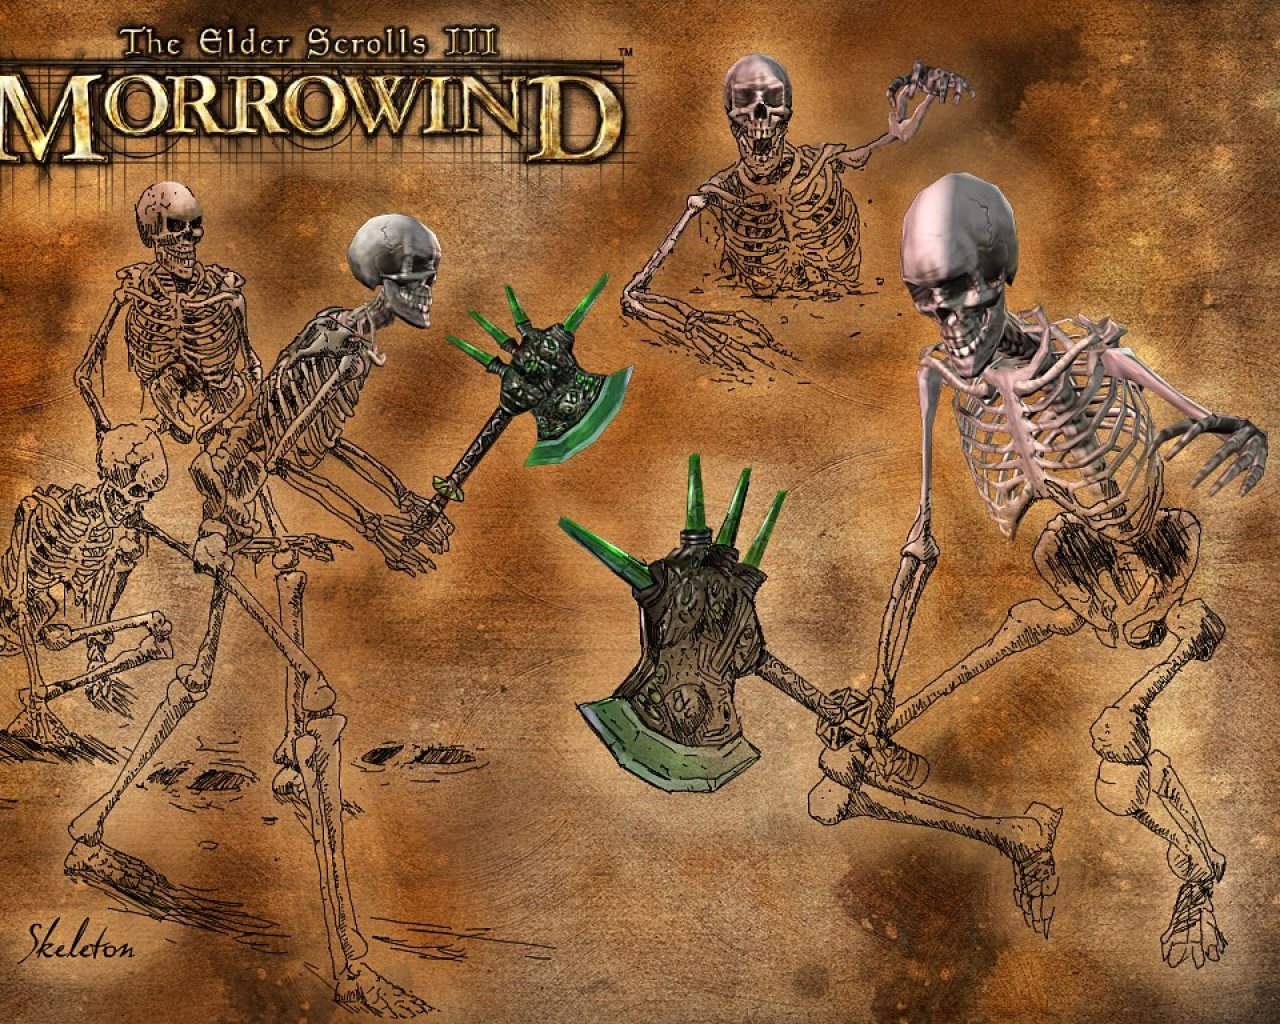 Wallpaper The Elder Scrolls III: Morrowind "Skeleton"